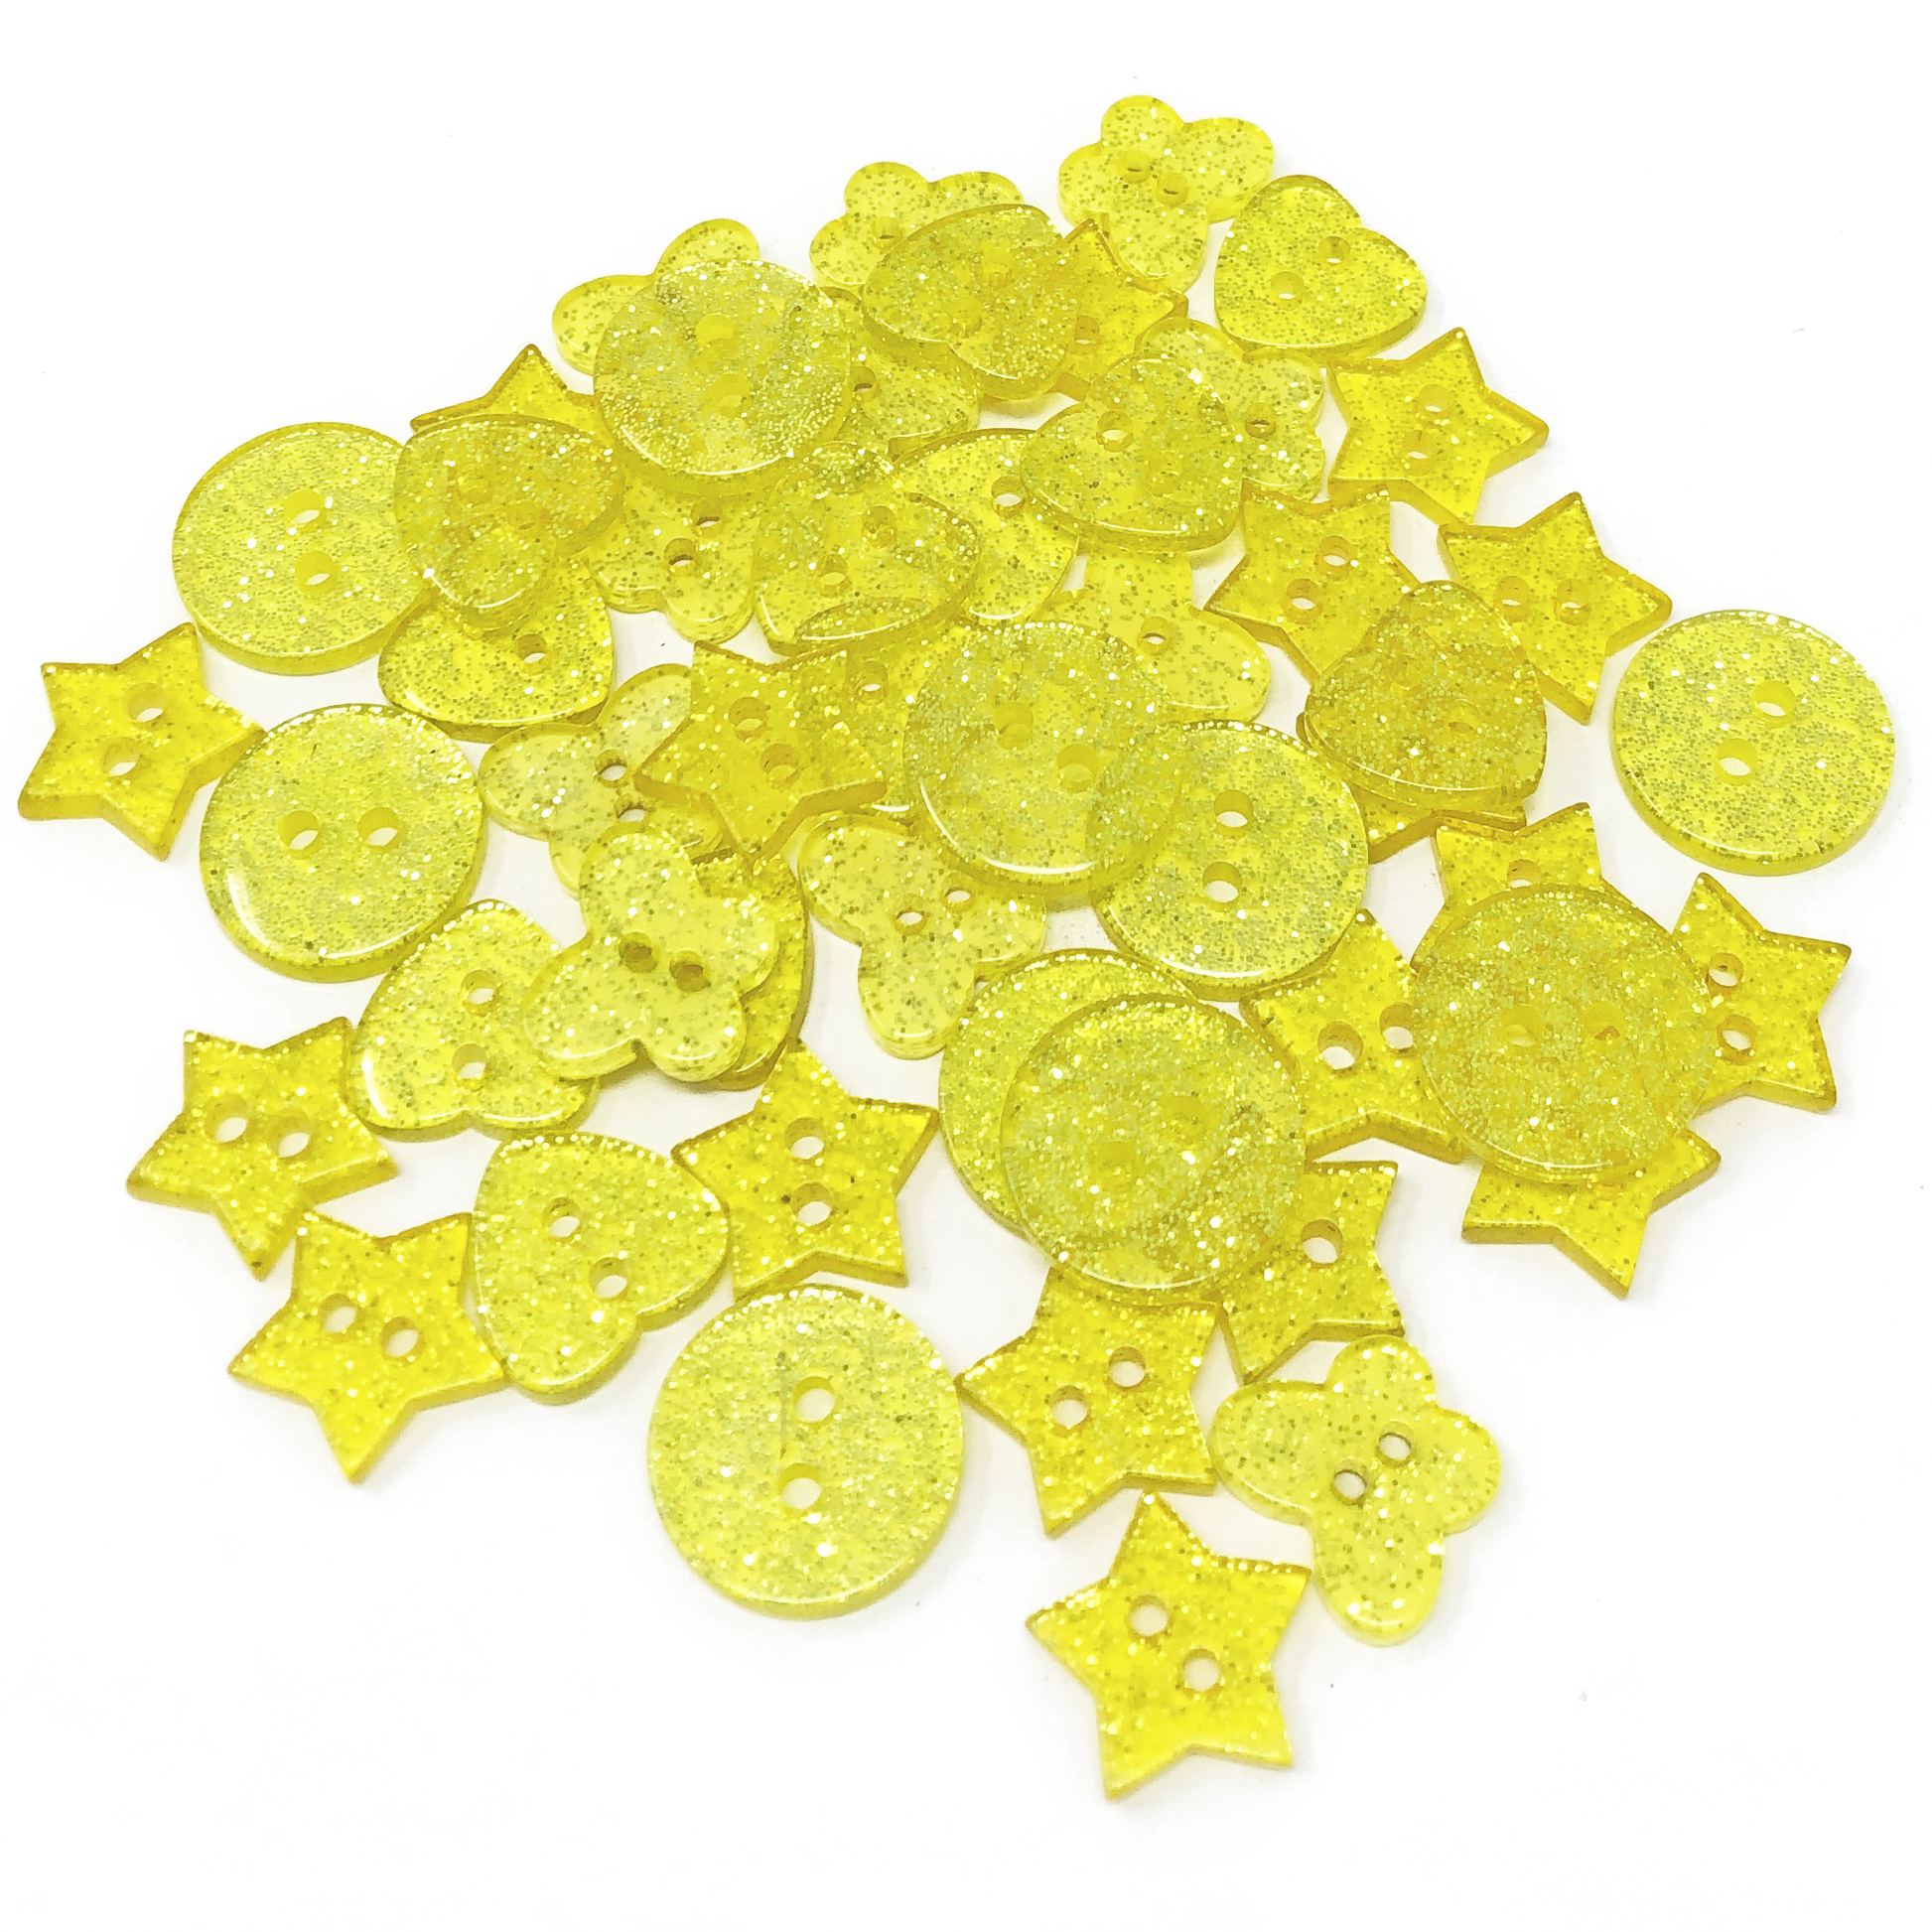 Yellow 50 Mix Glitter Mix Shape 13mm Resin Buttons